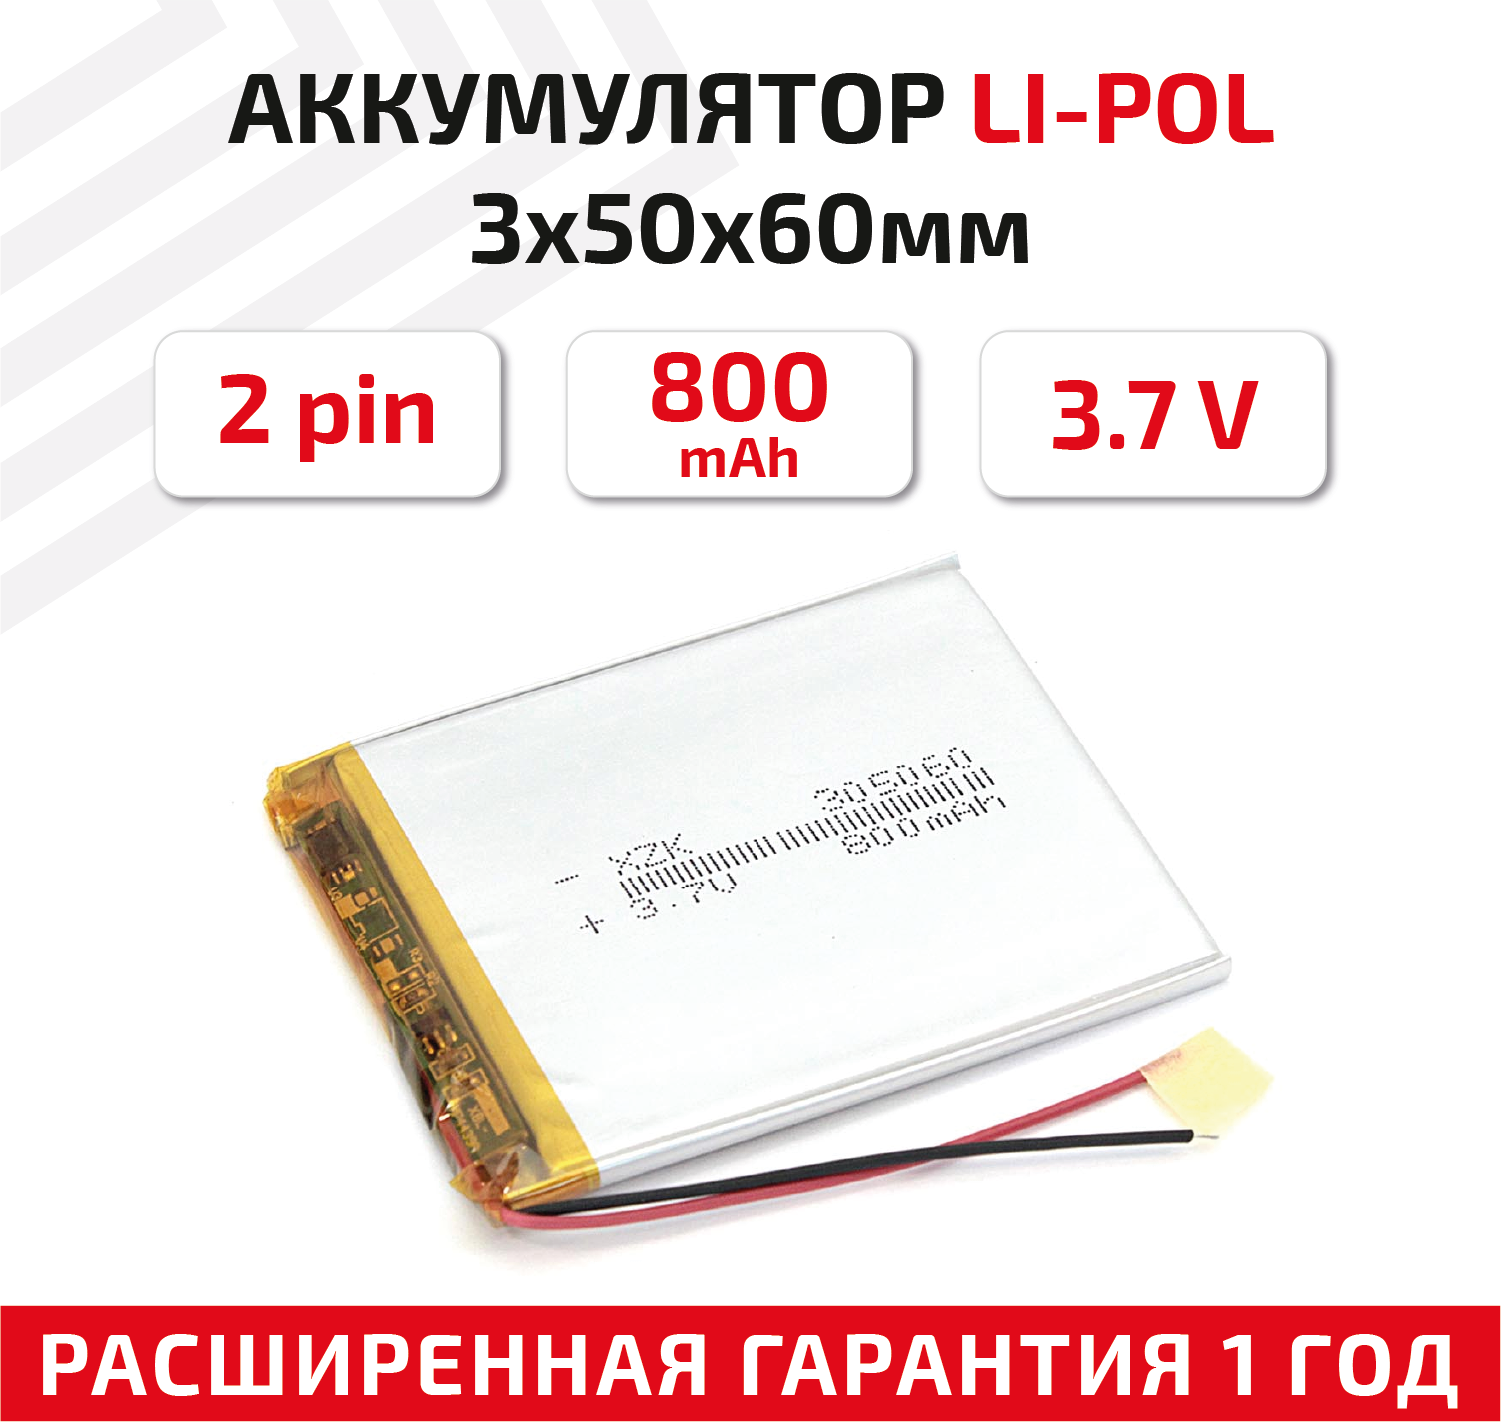 Универсальный аккумулятор (АКБ) для планшета, видеорегистратора и др, 3х50х60мм, 800мАч, 3.7В, Li-Pol, 2pin (на 2 провода)